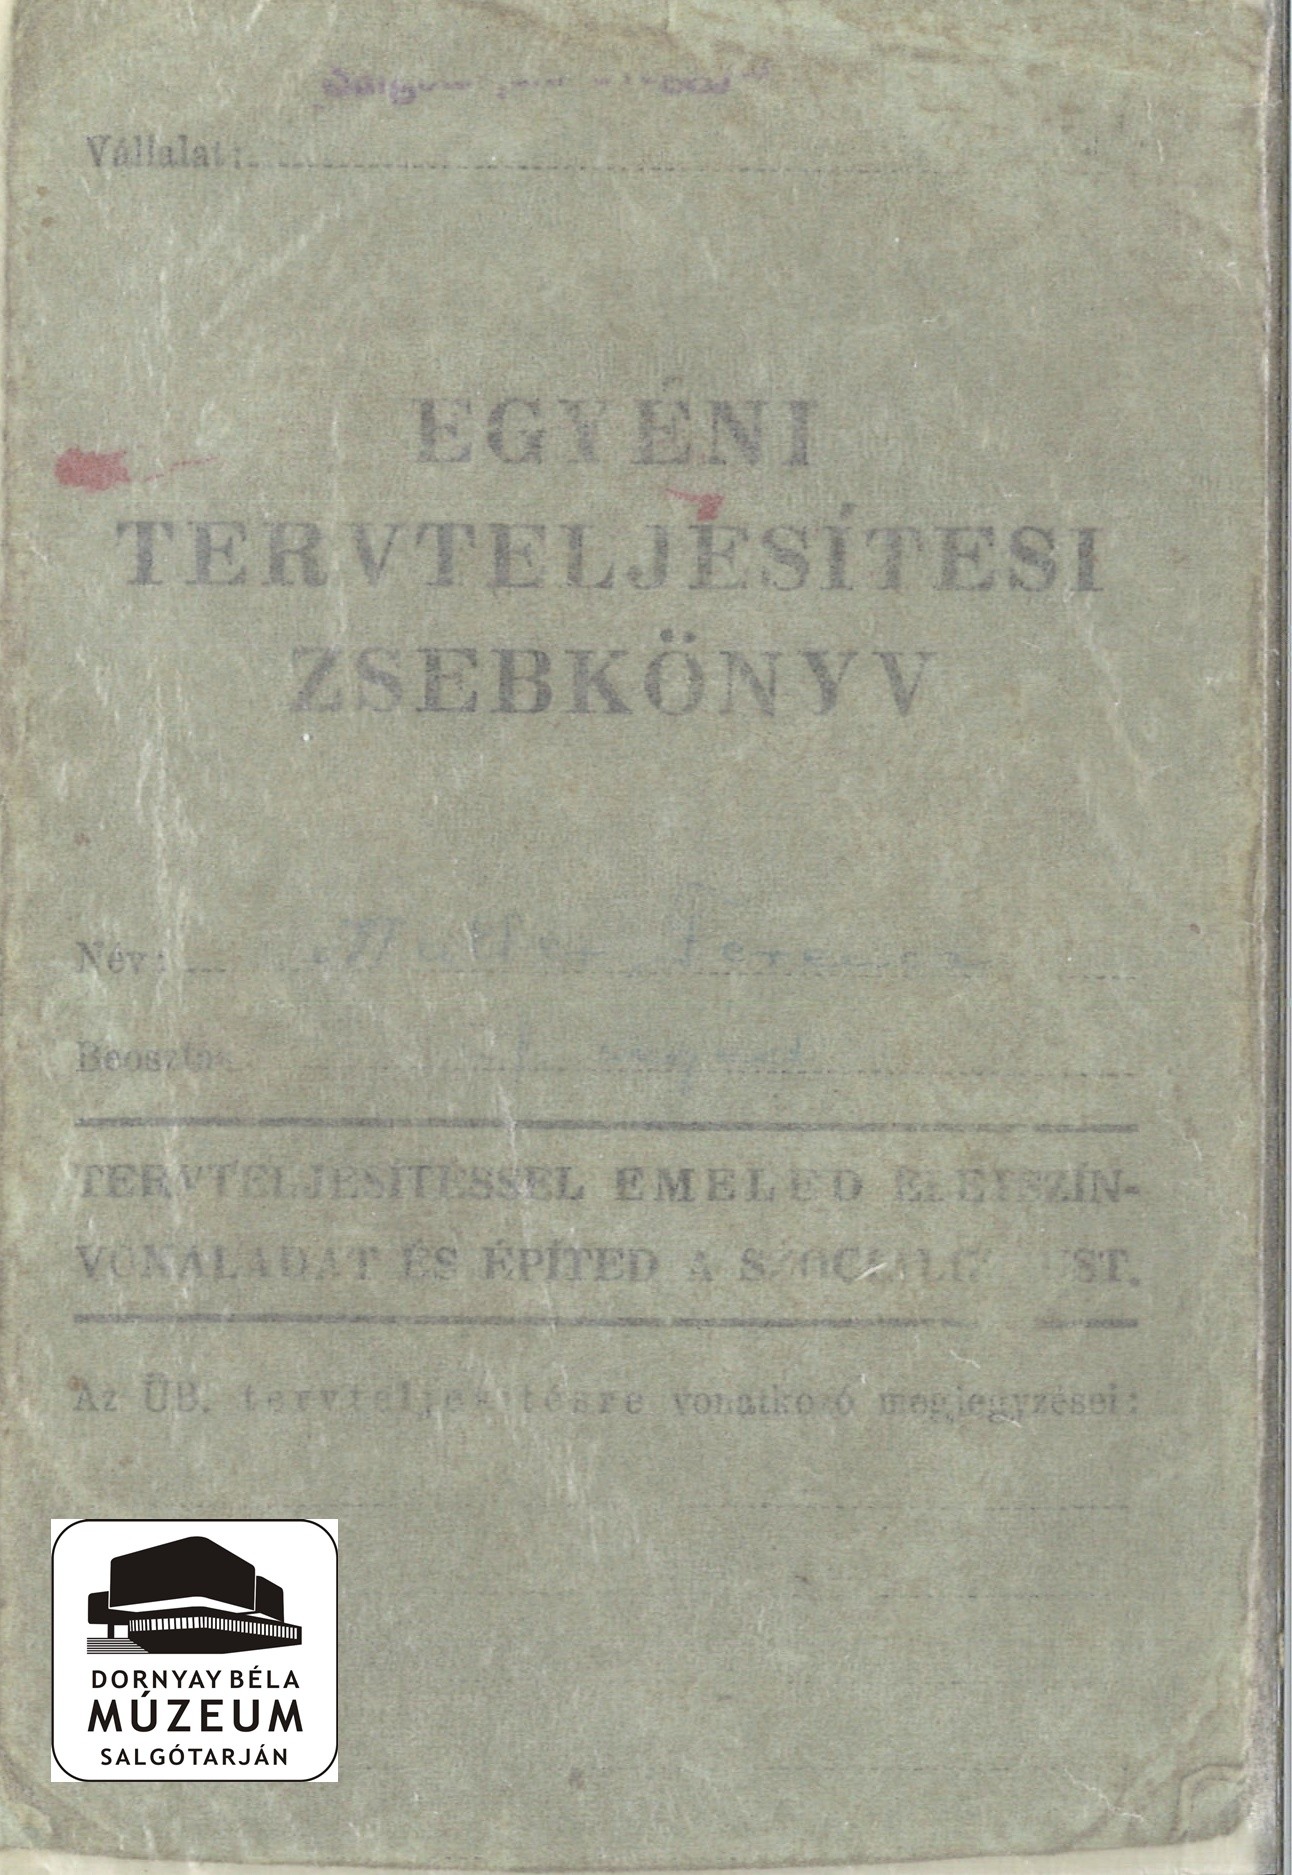 Egyéni tervteljesítési zsebkönyv. Müller Ferenc, üvegfúvó (Dornyay Béla Múzeum, Salgótarján CC BY-NC-SA)